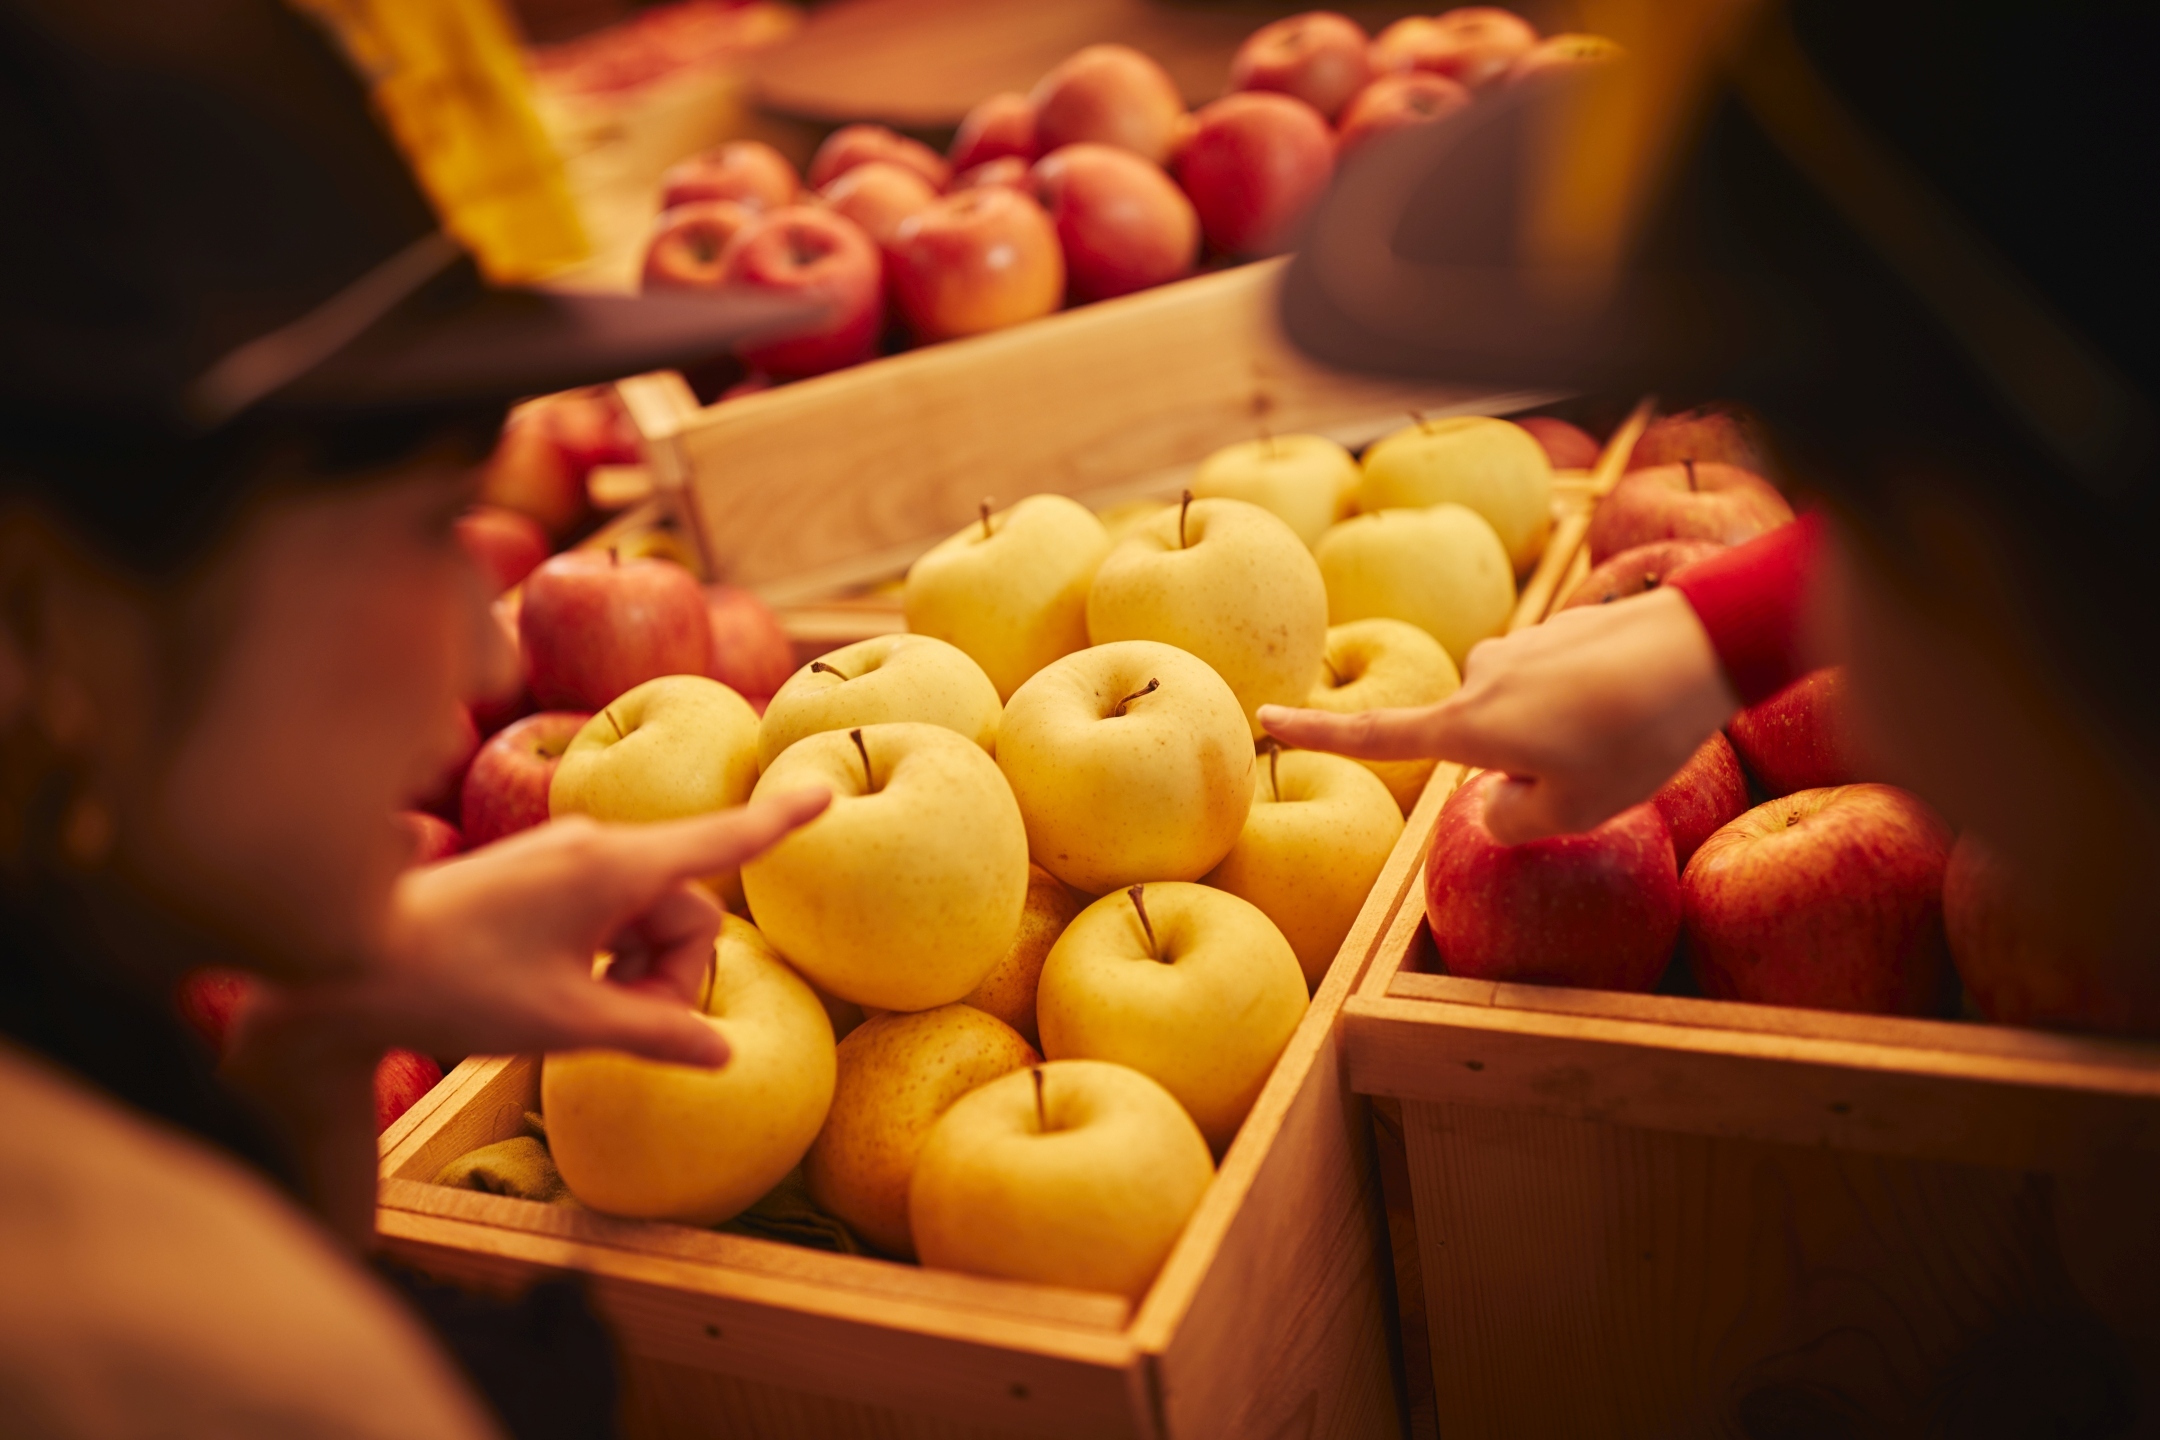 星野リゾート 青森屋収穫期を迎えたりんごを競り落とせる りんごの競り体験 開催開催期間 19年9月1日 11月24日 星野リゾートのプレスリリース